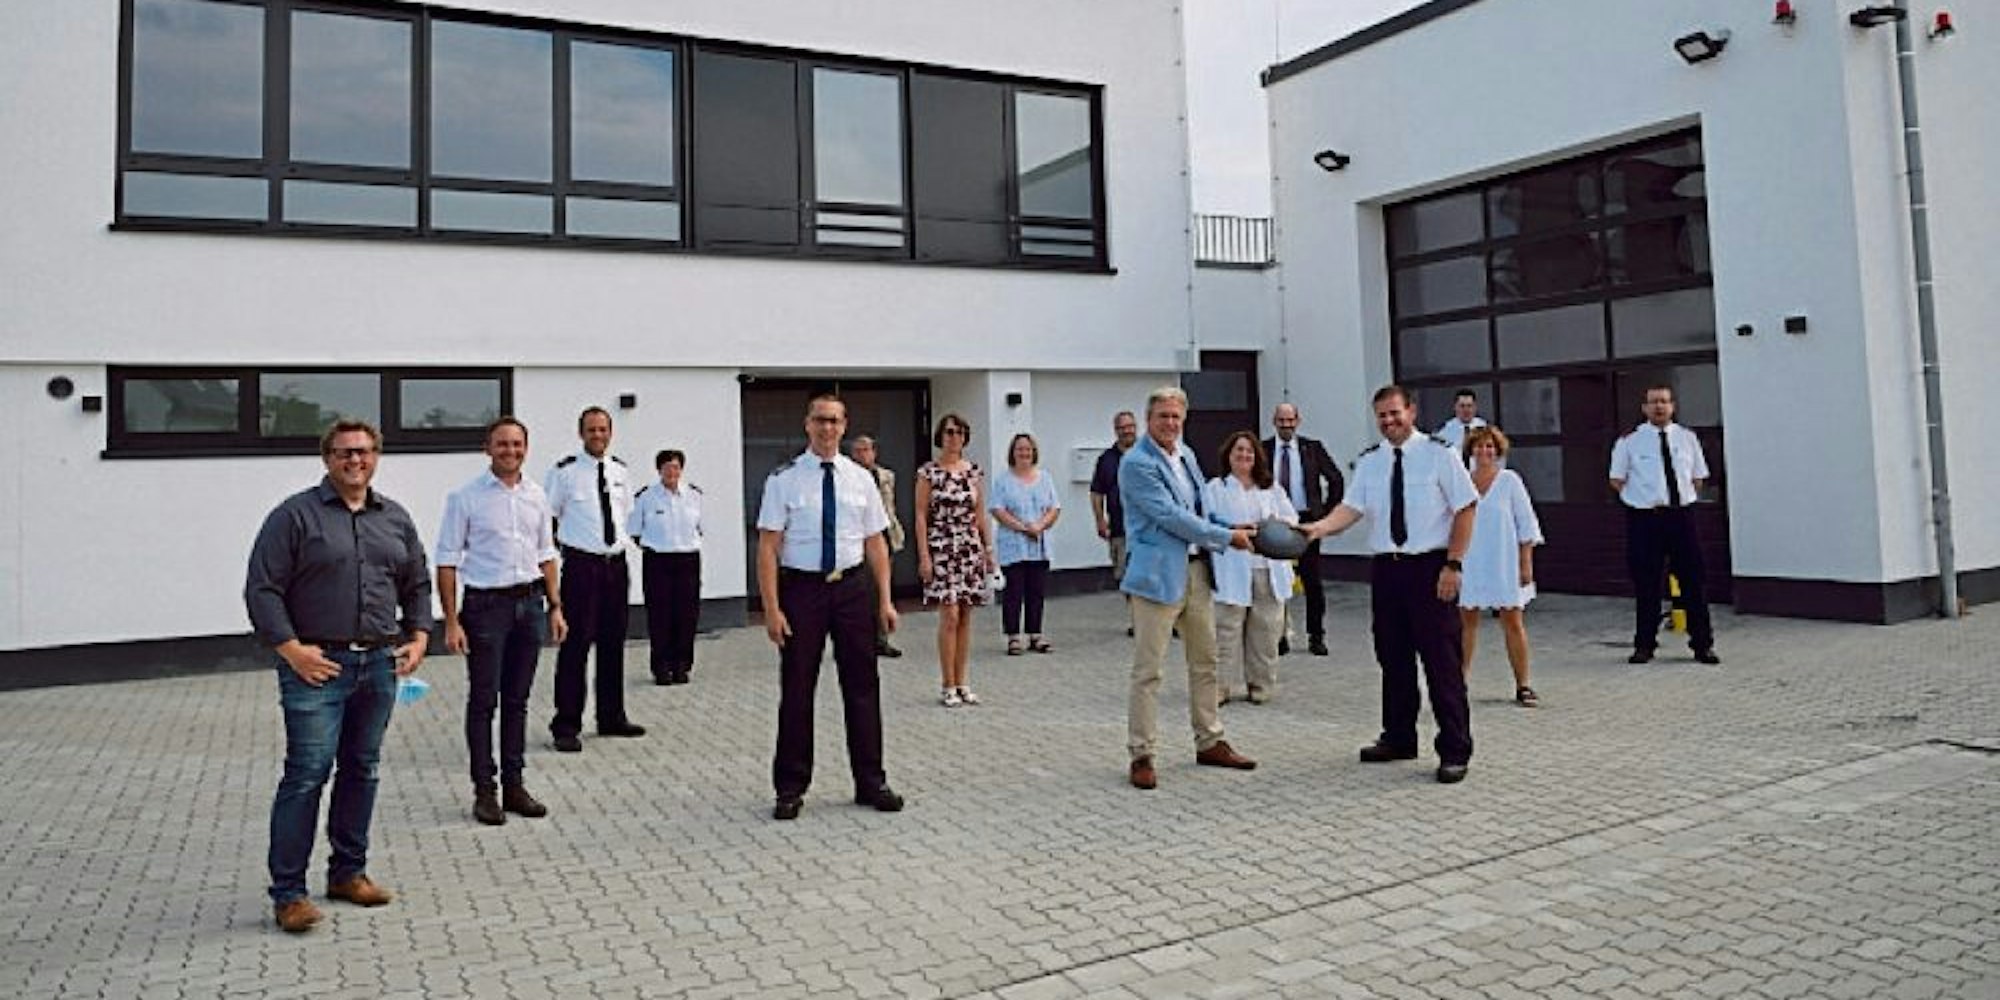 Erweitert und modernisiert ist das Feuerwehrhaus Rösrath, das im Sommer 2020 offiziell übergeben wurde.